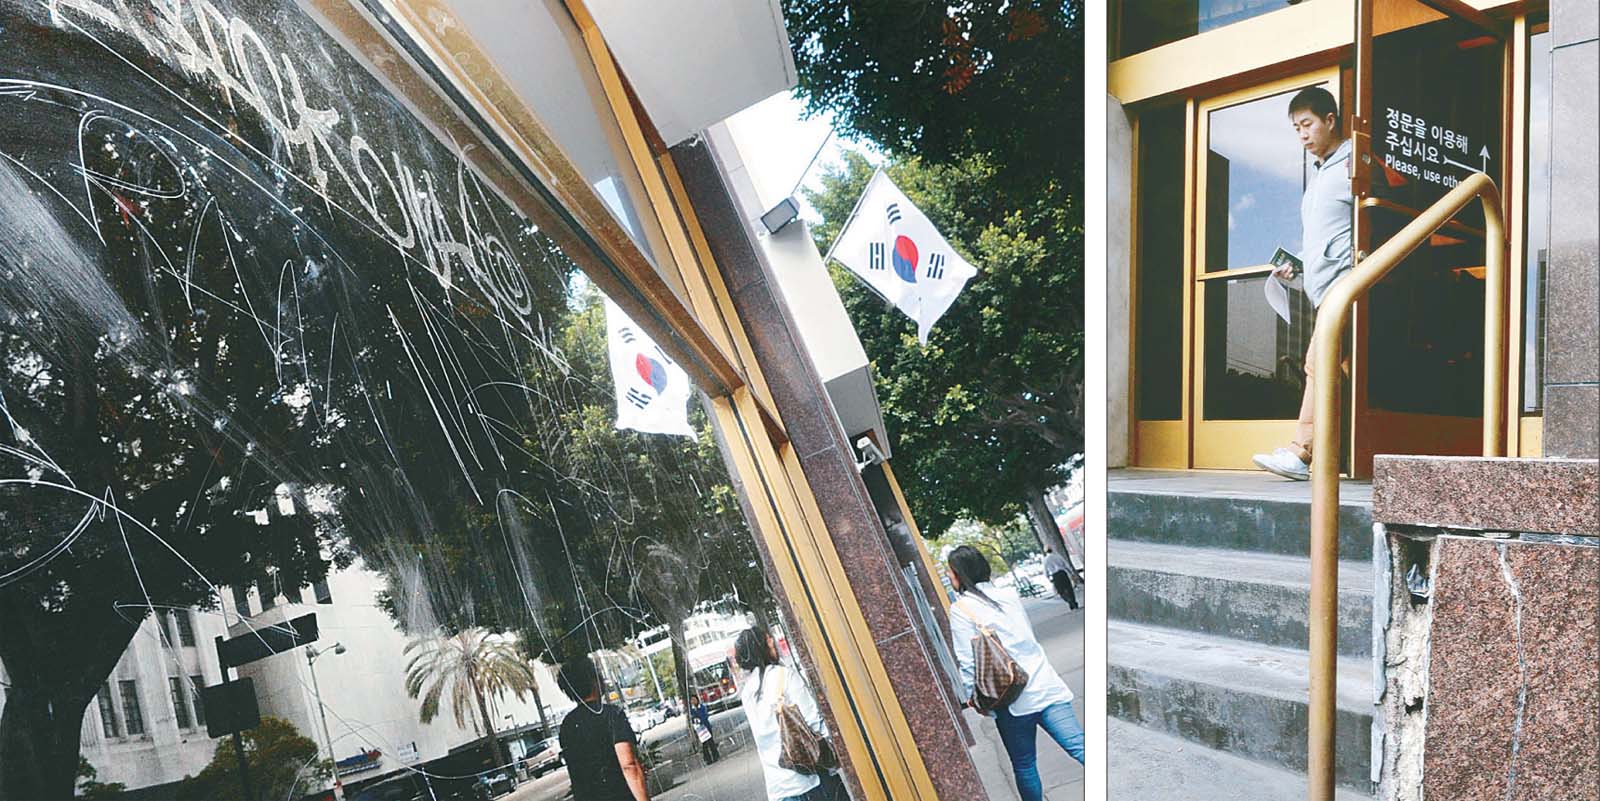 총영사관 건물에 낙서·깨진 벽면 ‘대한민국 상징’ 인데…